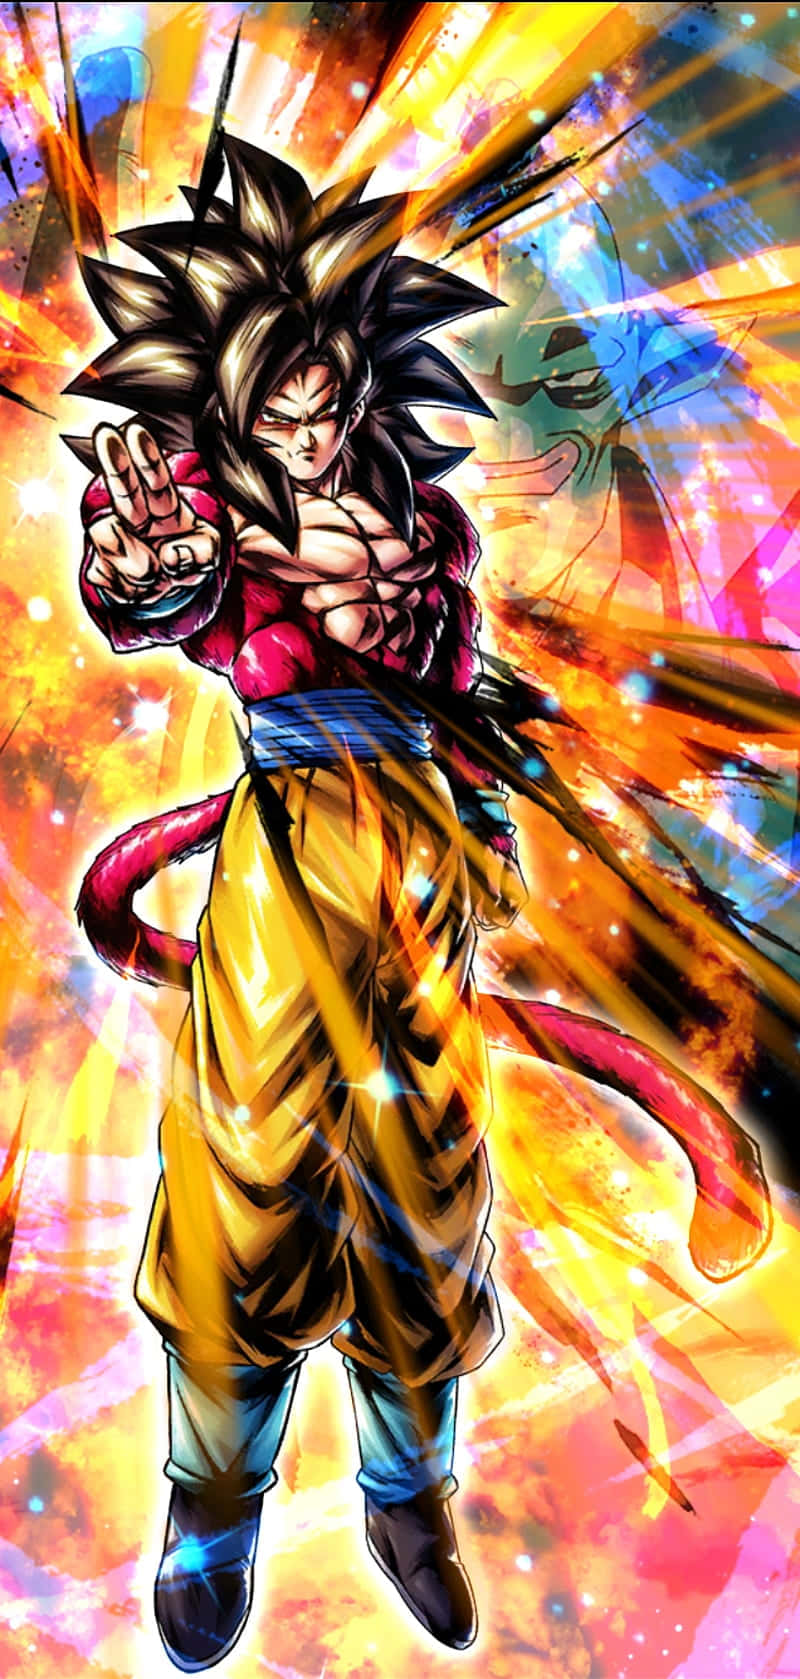 Goku som Super Saiyan 4 - Tag ham på dit skrivebord! Wallpaper